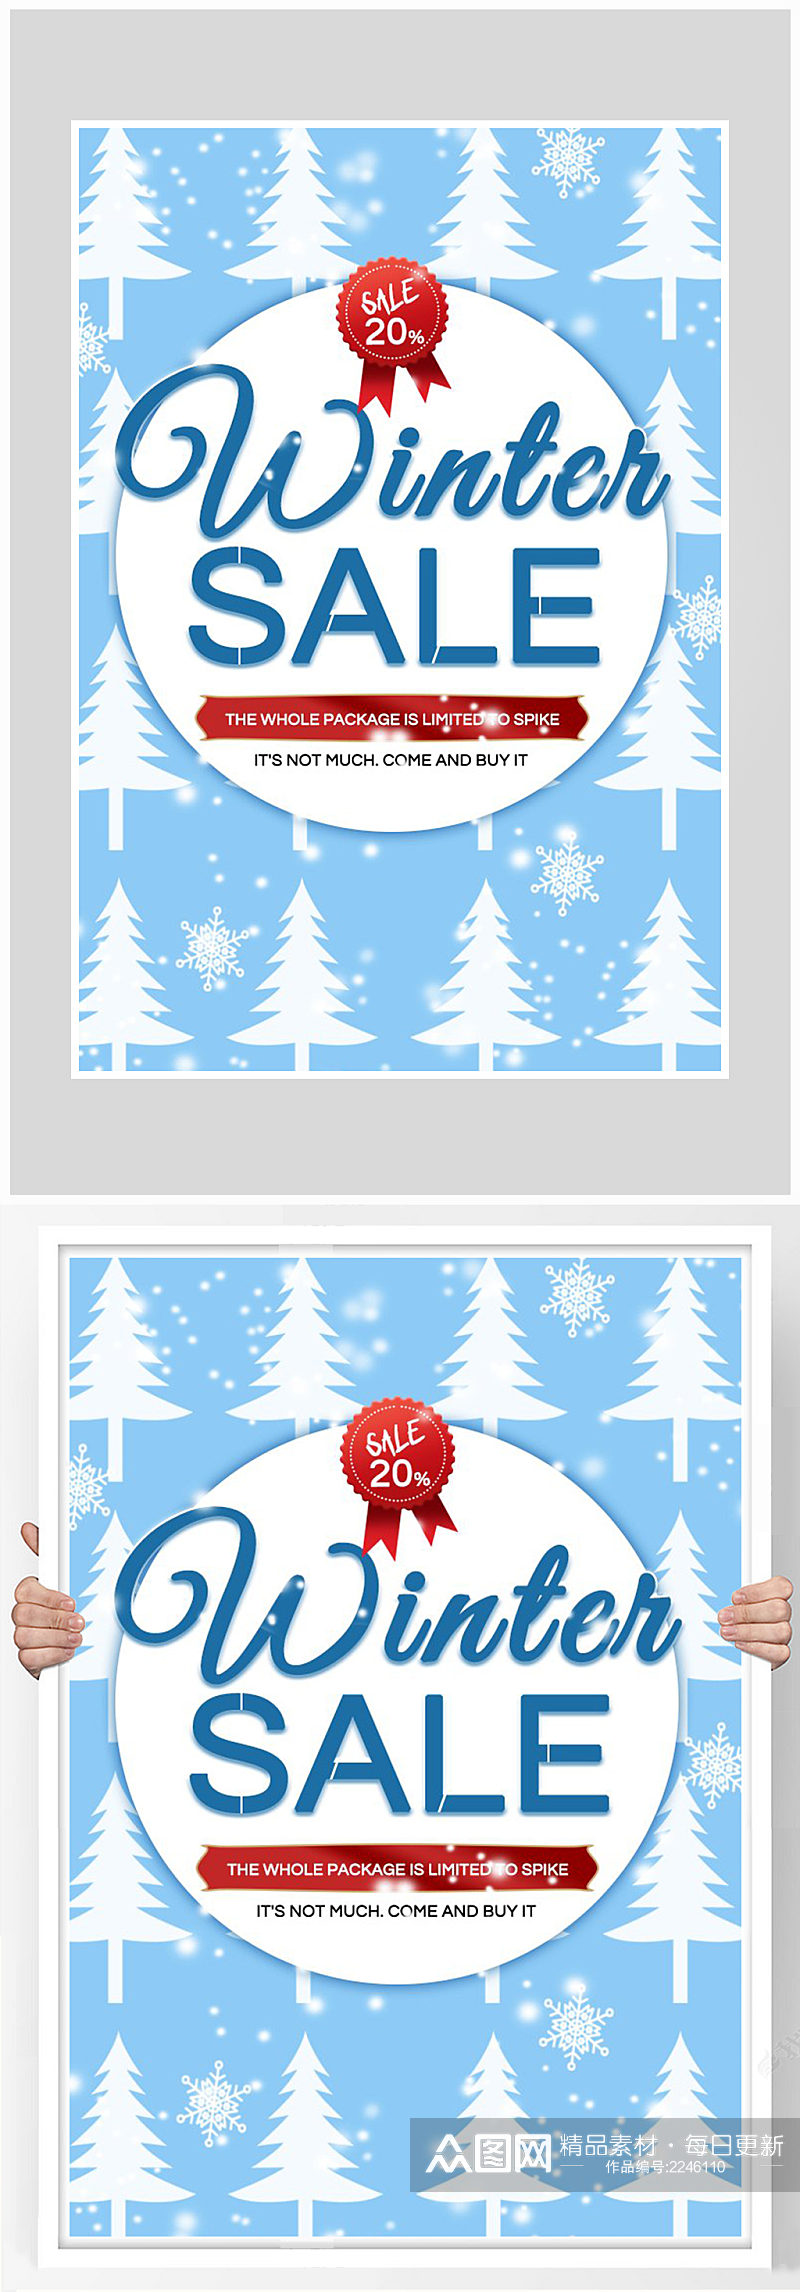 创意质感冬季促销打折海报设计素材